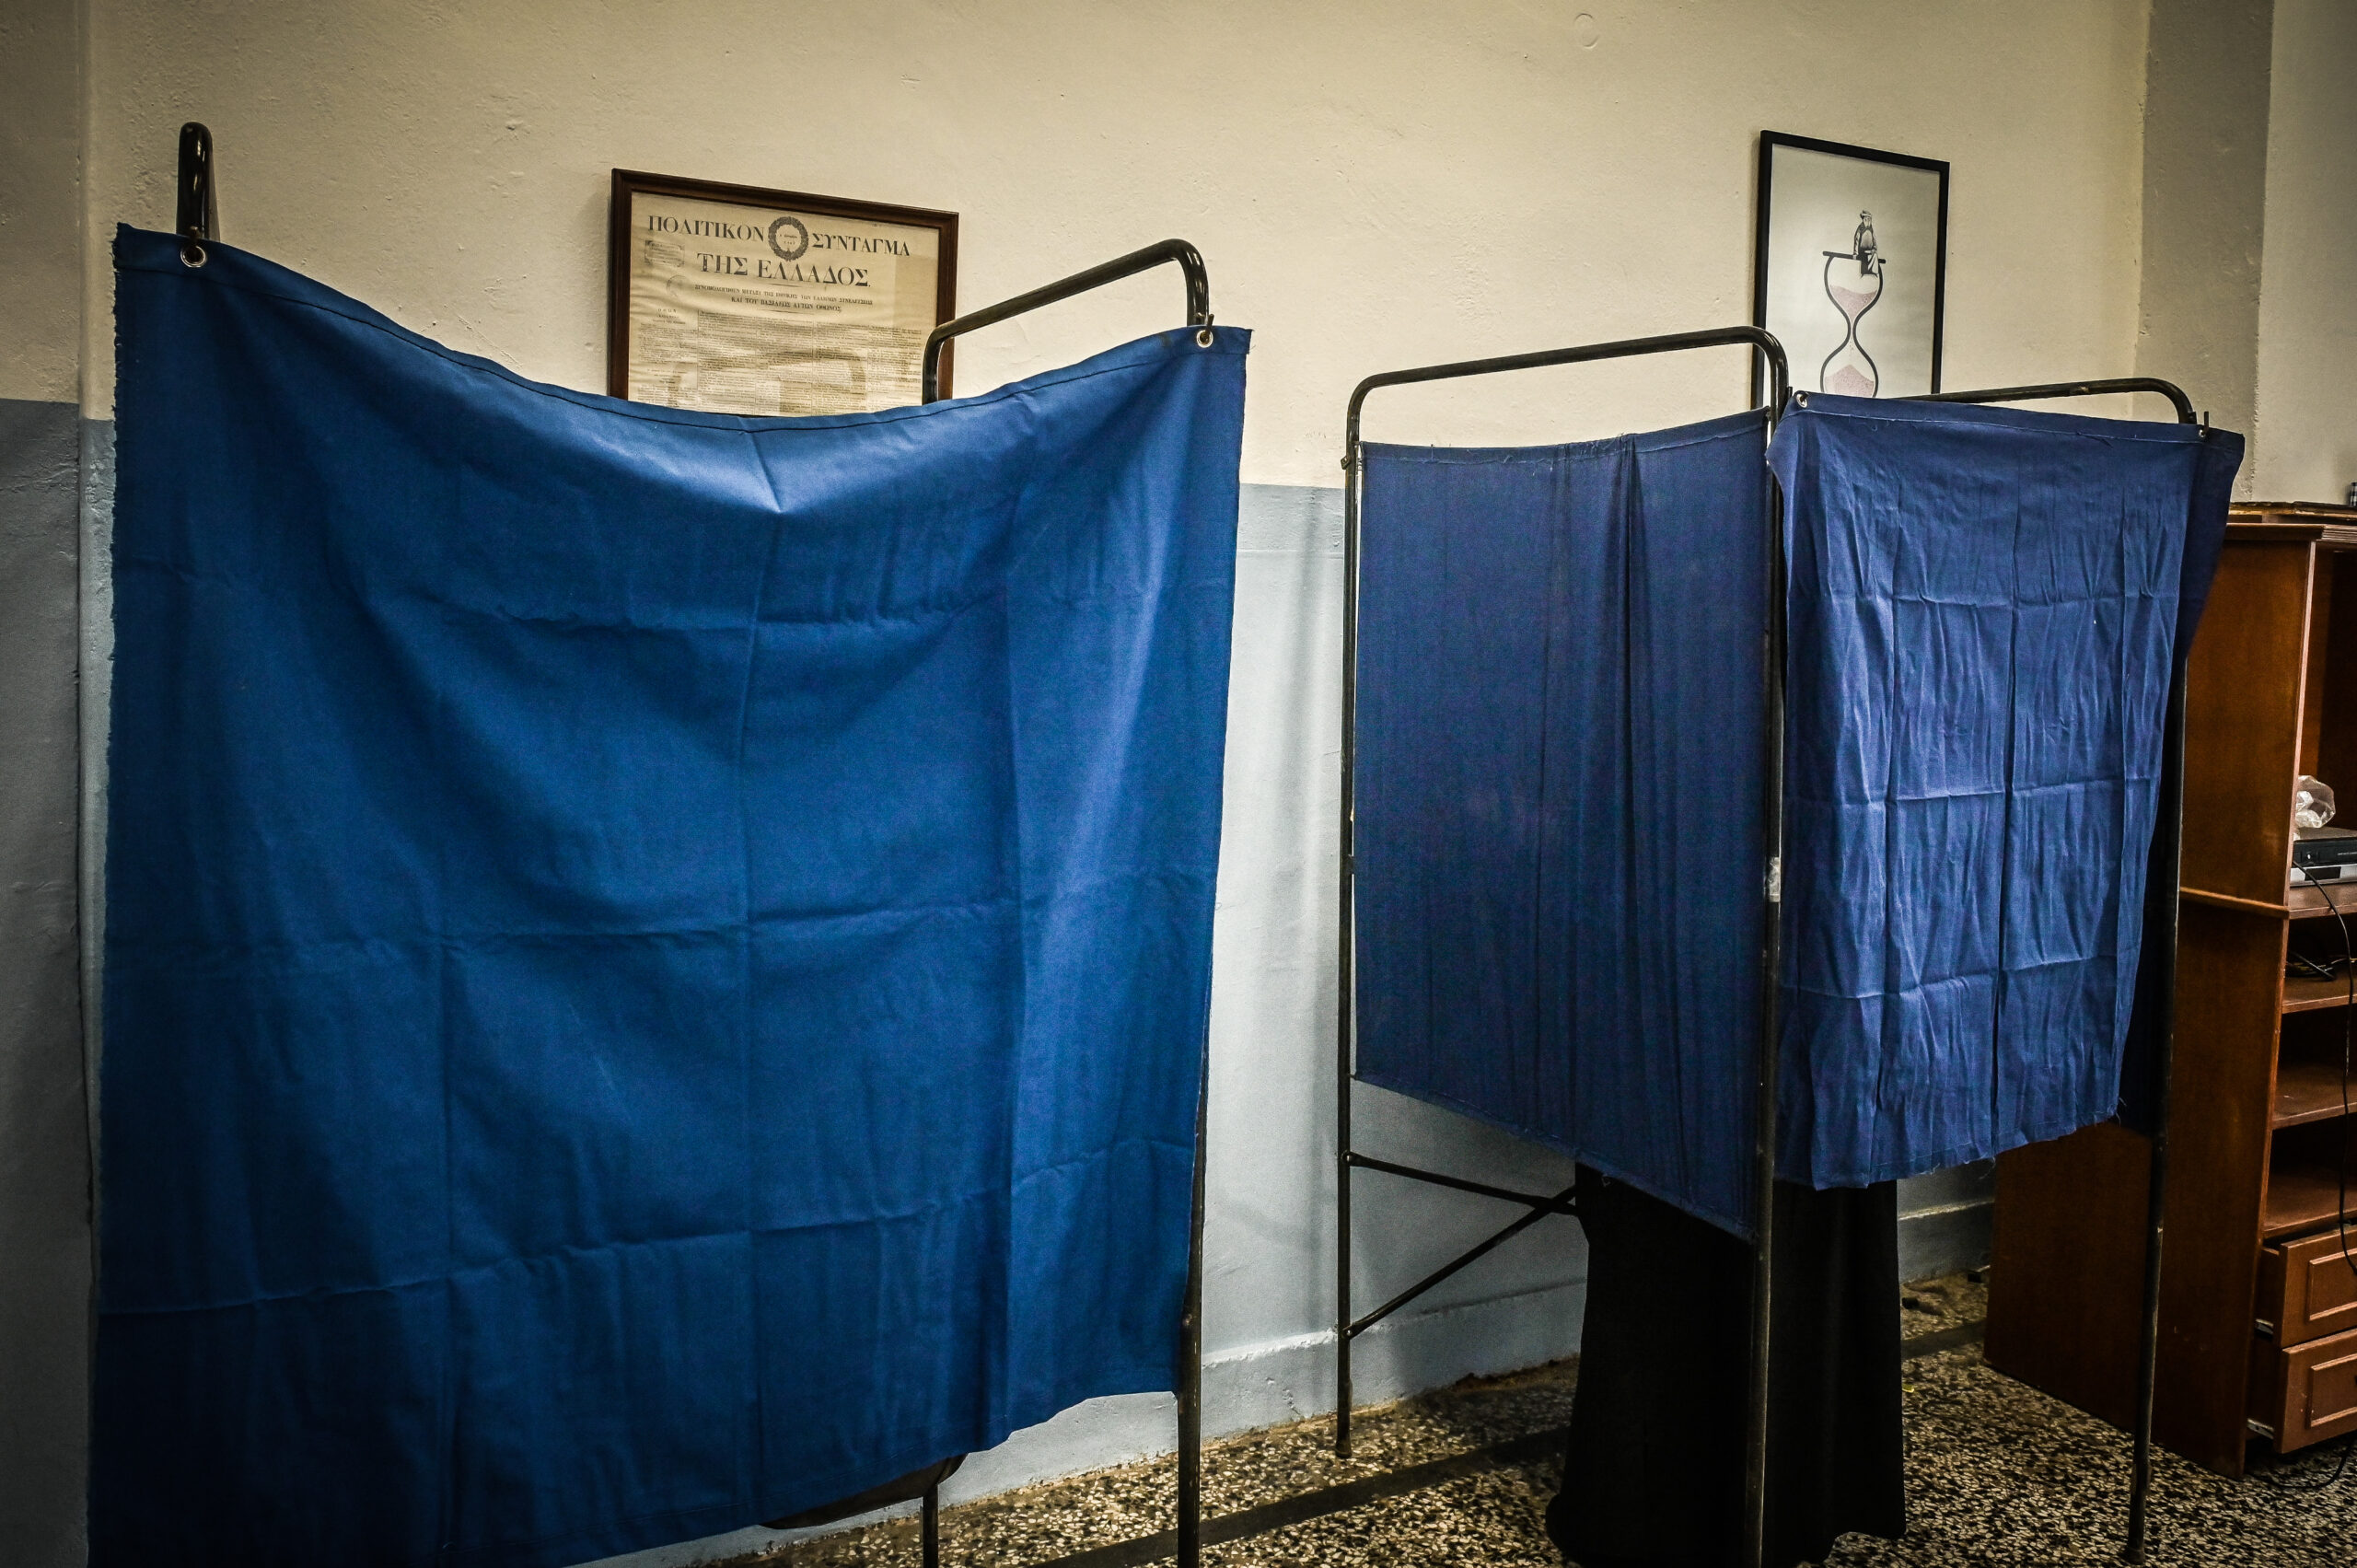 Τα διεθνή ΜΜΕ με το βλέμμα στραμμένο στις ελληνικές εκλογές